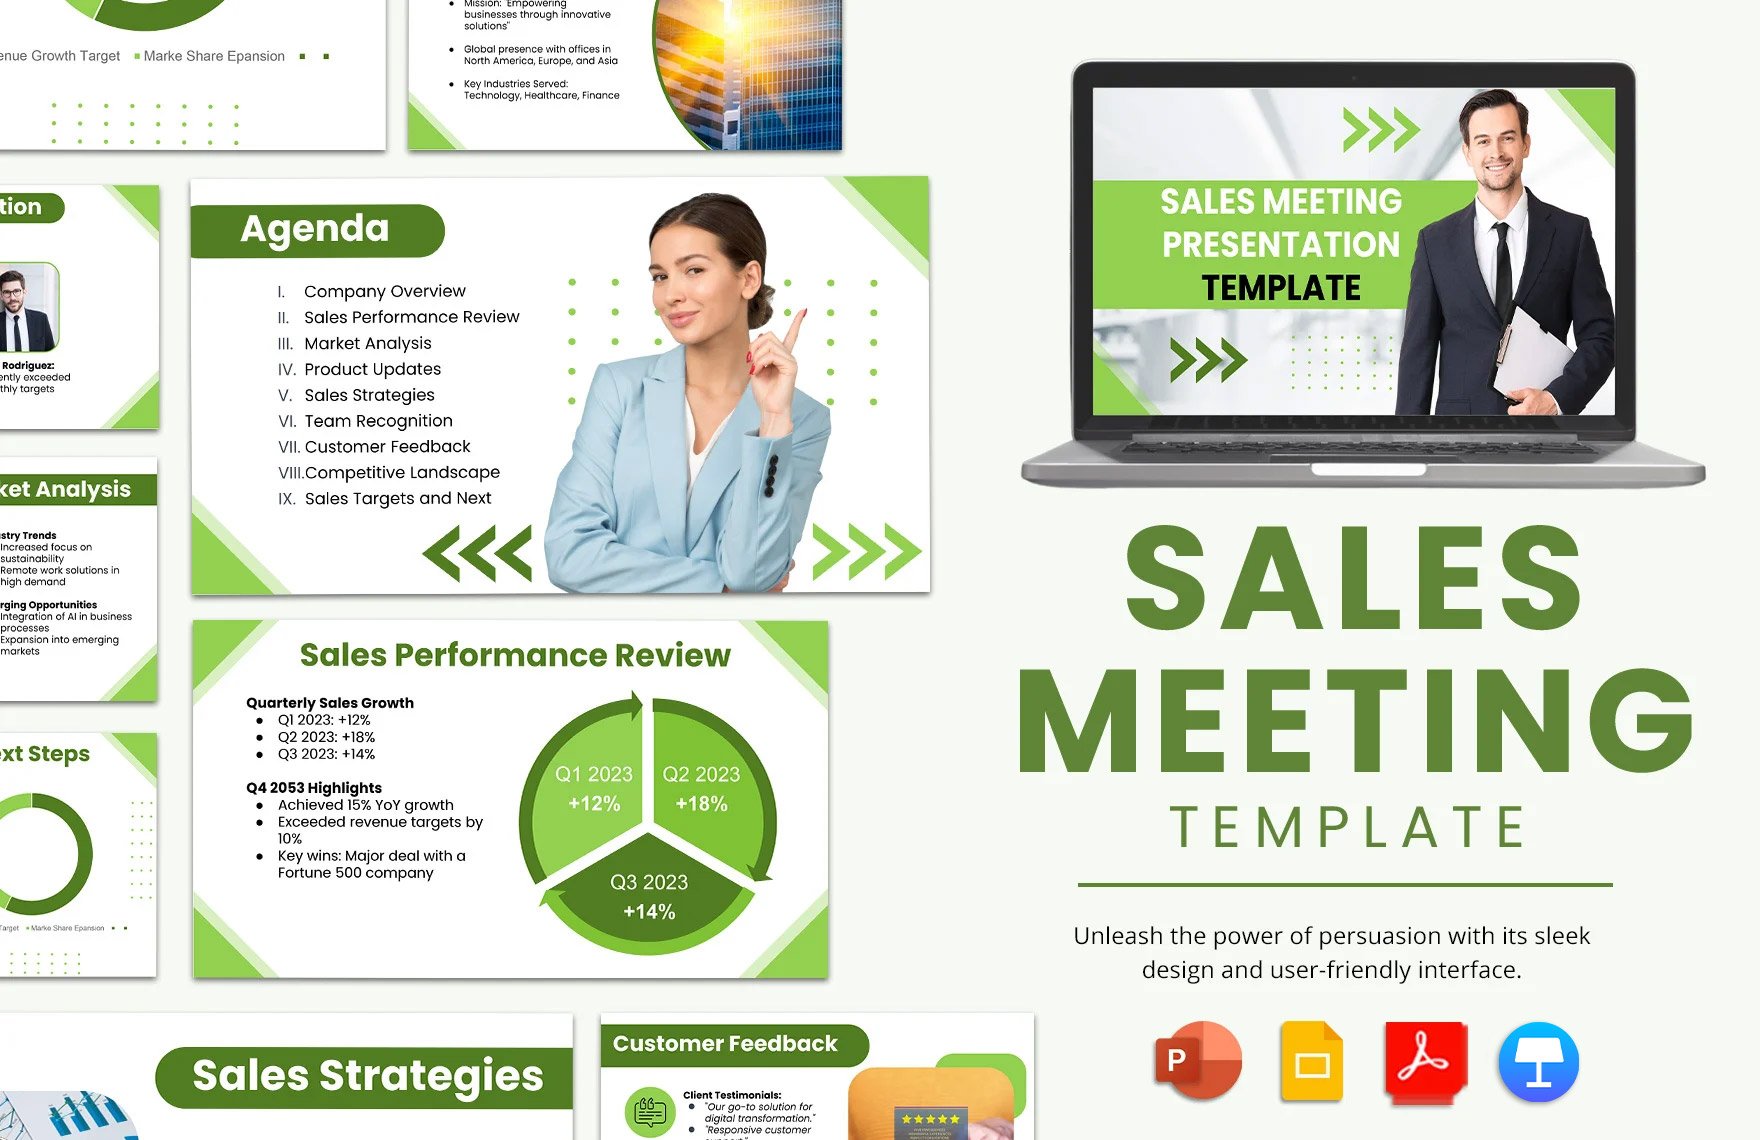 Sales Meeting Template